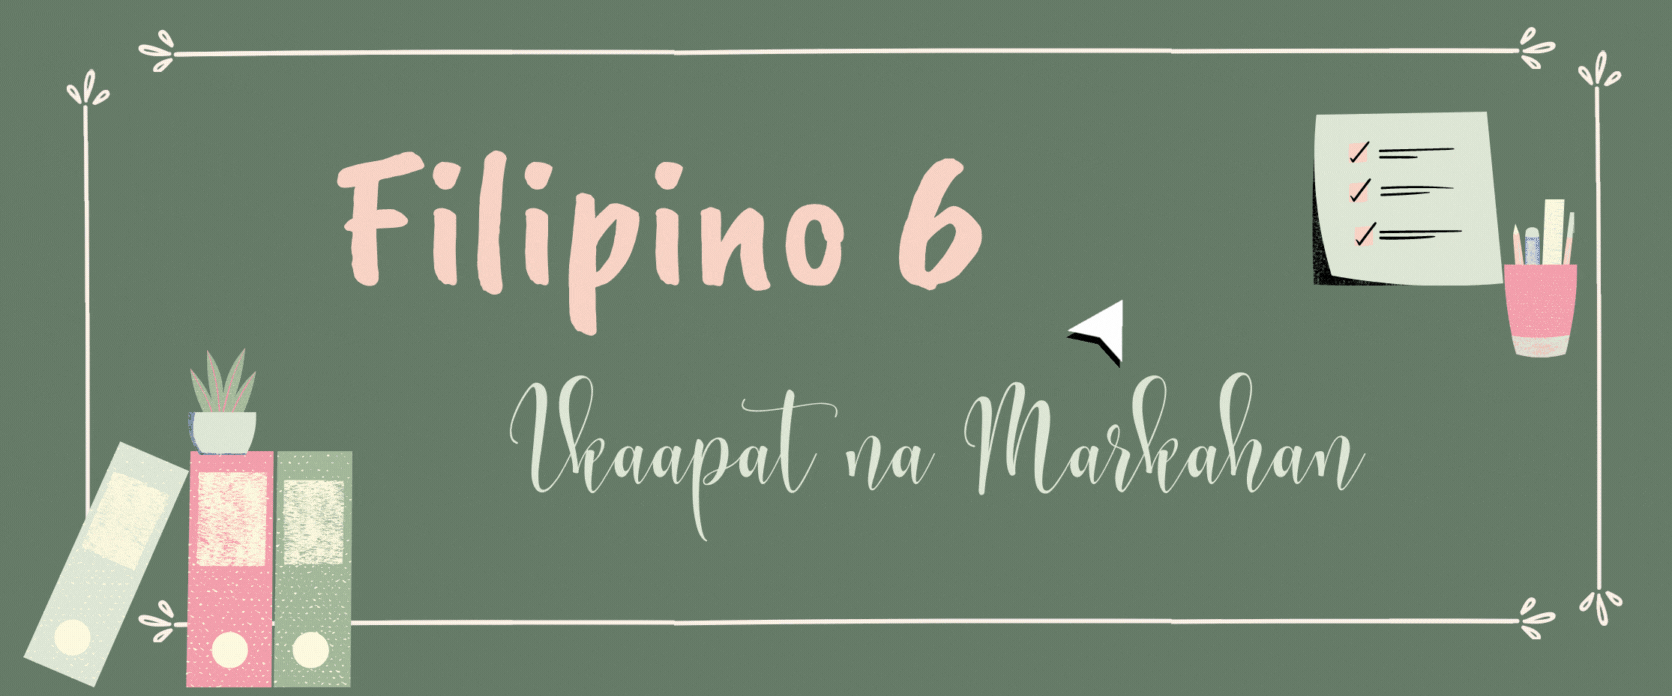 G6 - Filipino Quarter 4 LLAMADO